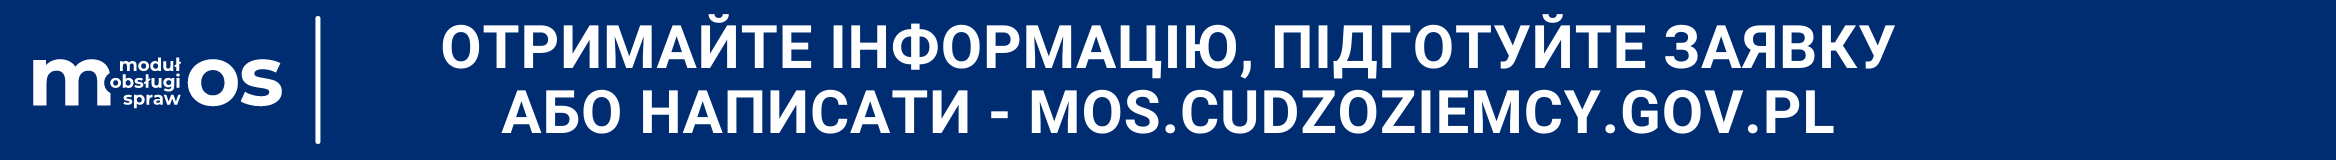 mos.cudzoziemcy.gov.pl/ua